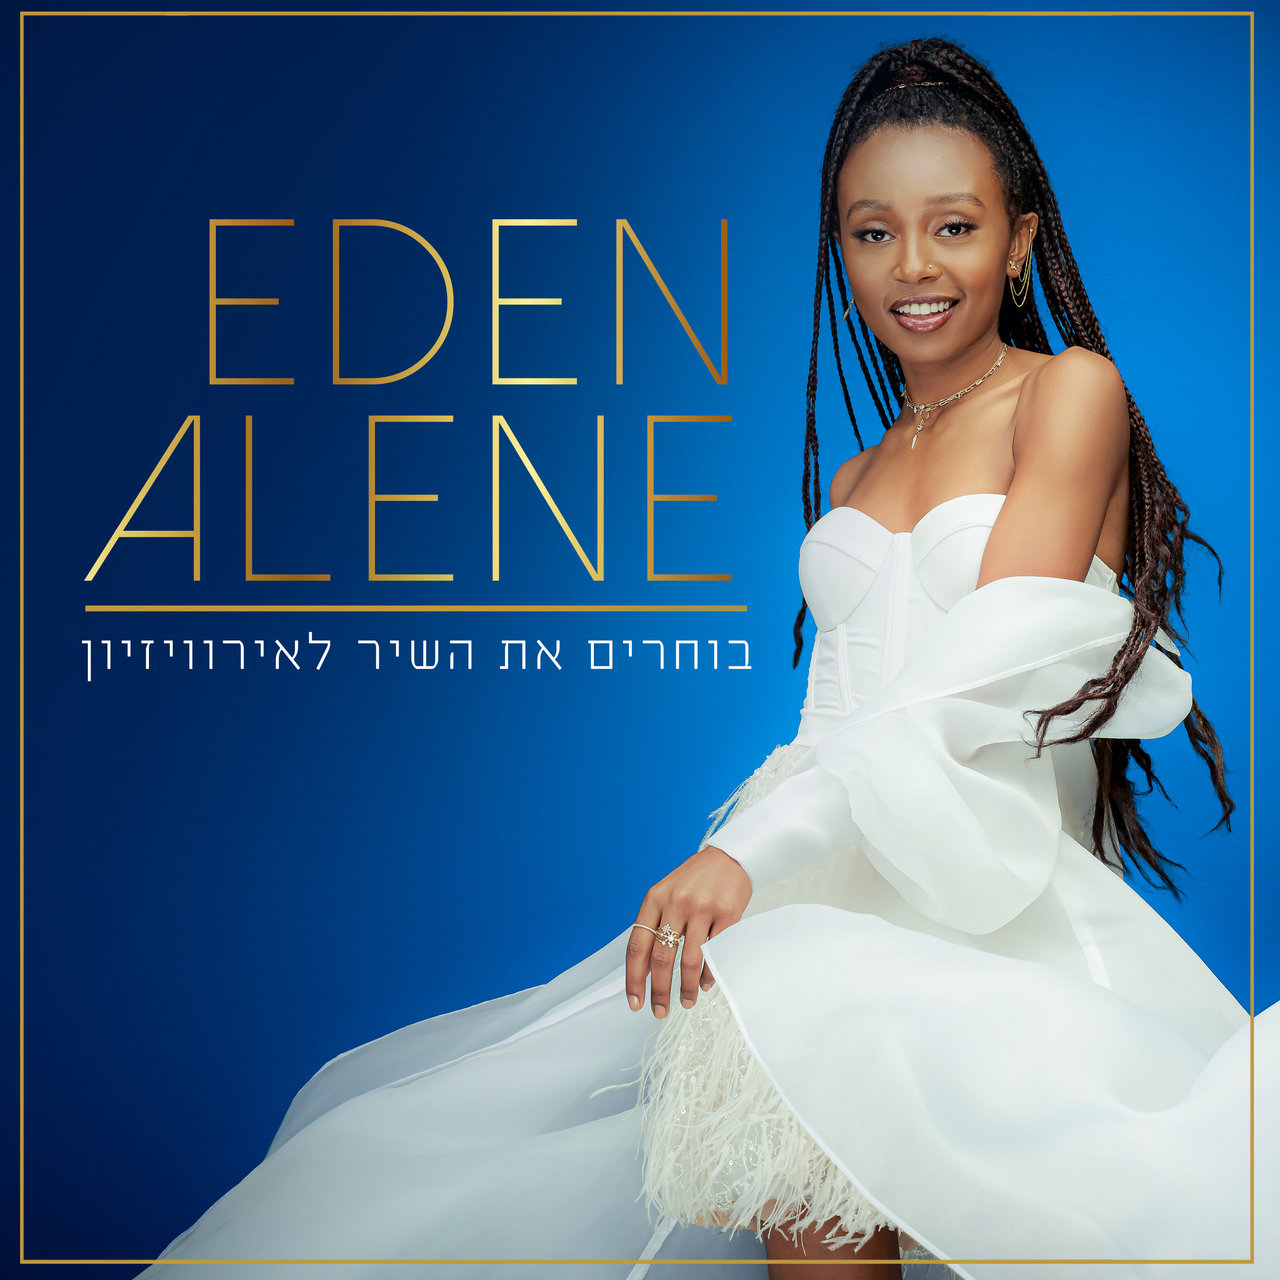 Eden Alene — Savior In The Sound cover artwork